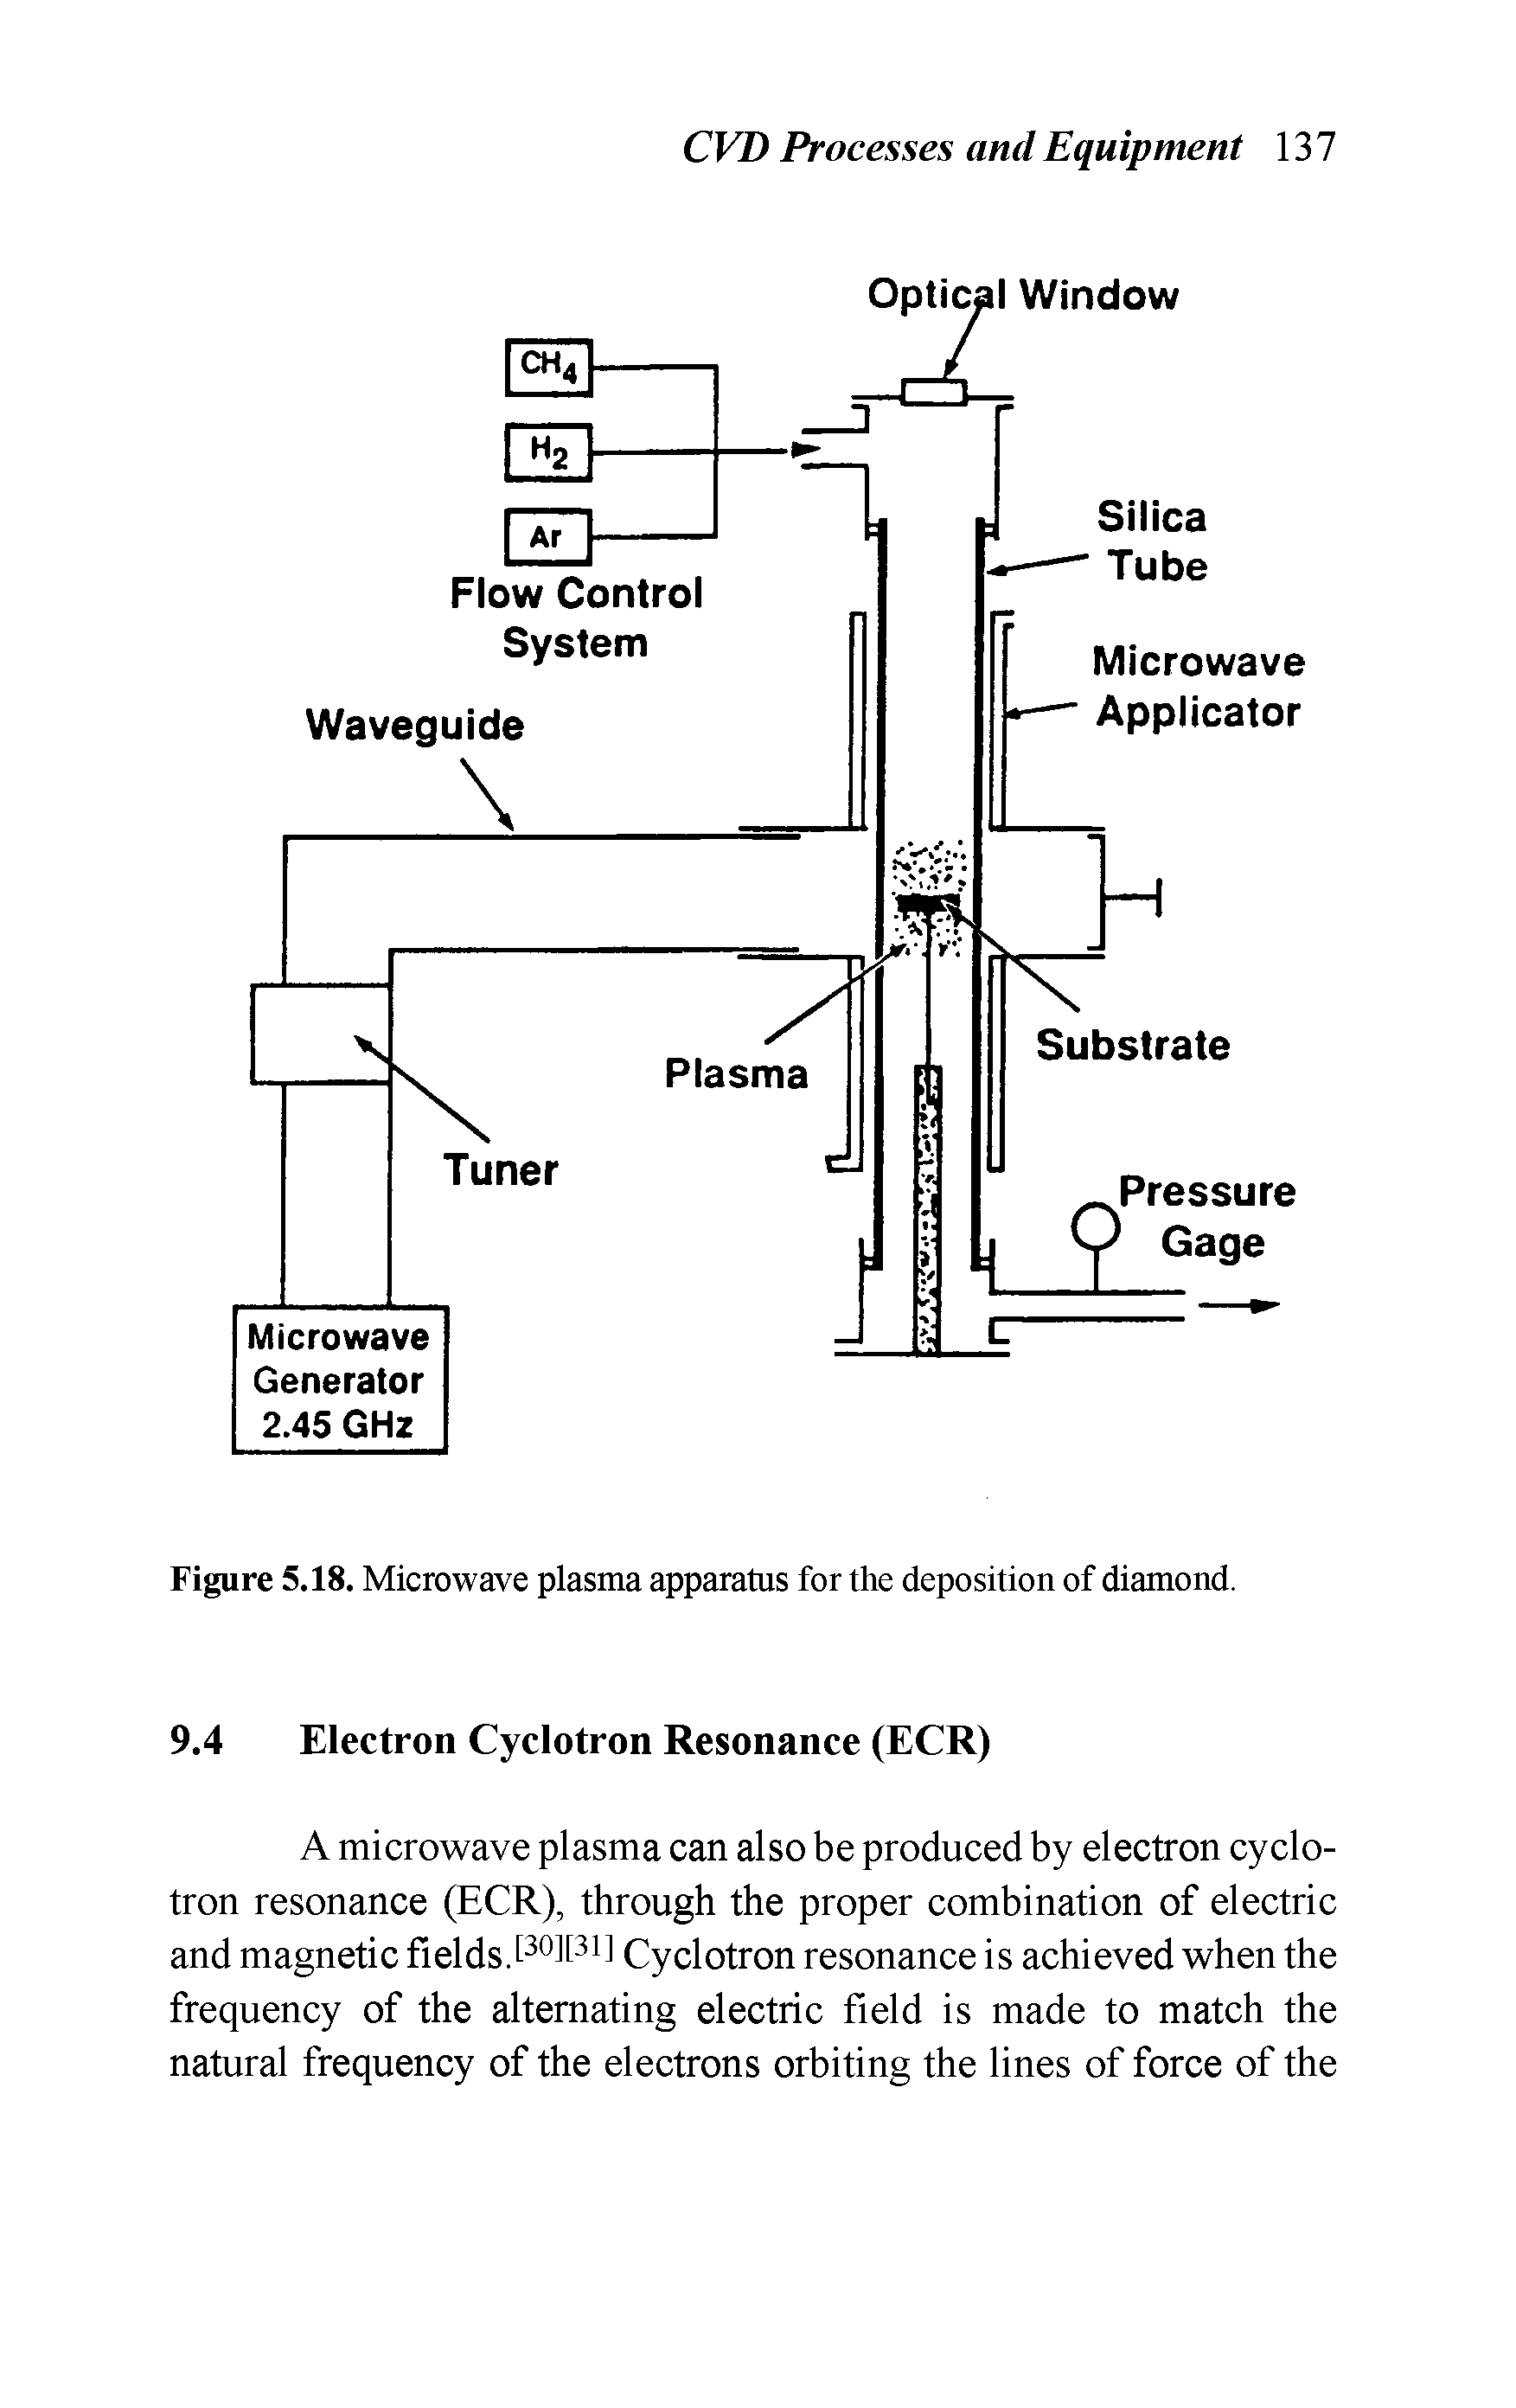 Figure 5.18. Microwave plasma apparatus for the deposition of diamond.